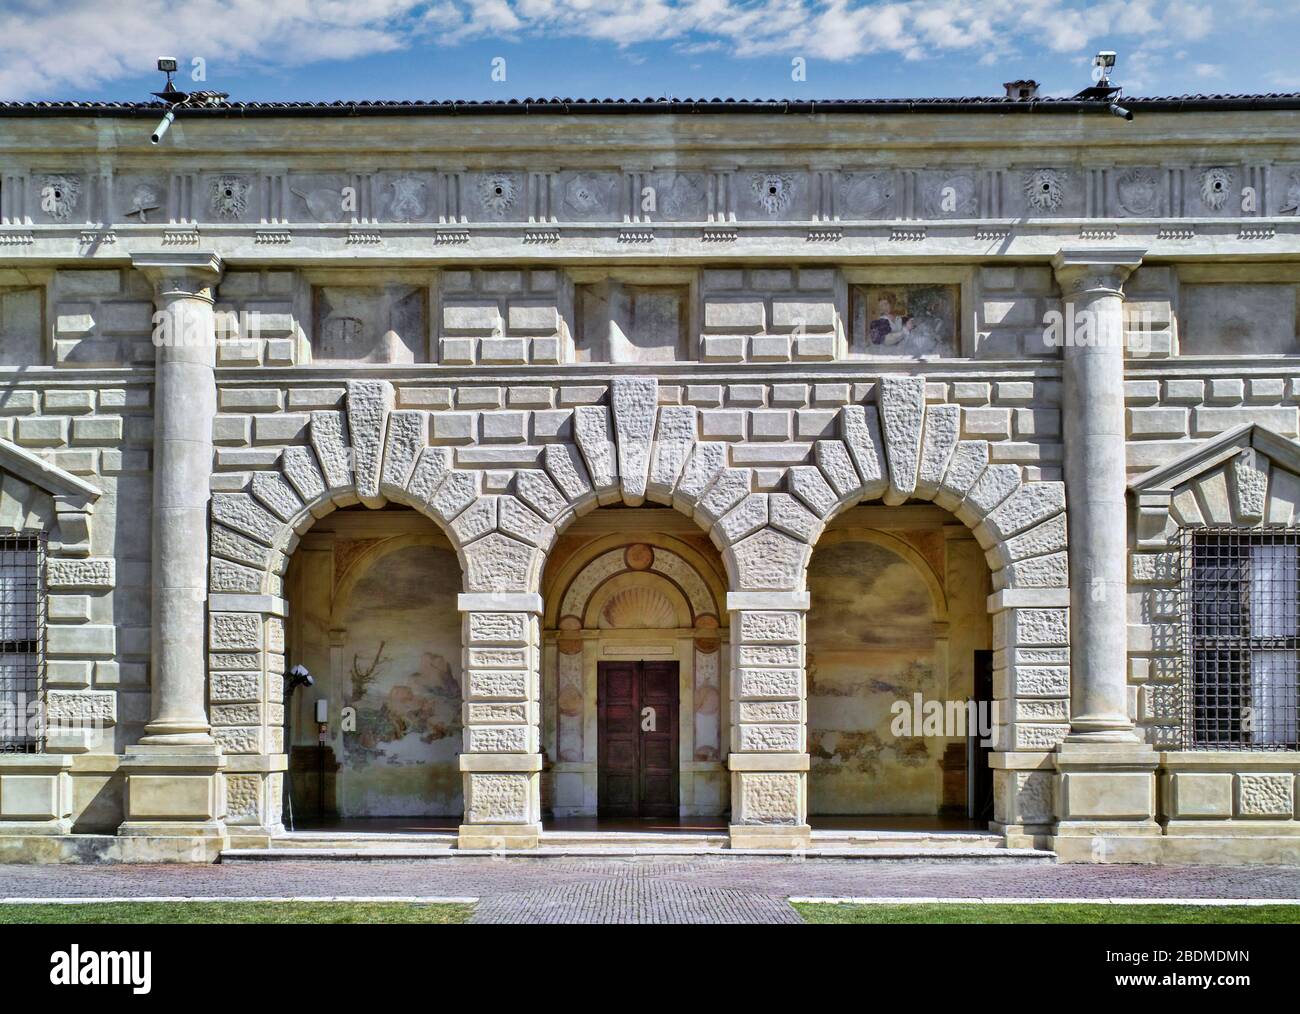 Palazzo te, Mantoua, italie. Détail architectural d'une façade sur la cour intérieure d'une luxueuse résidence italienne de style Renaissance. Banque D'Images